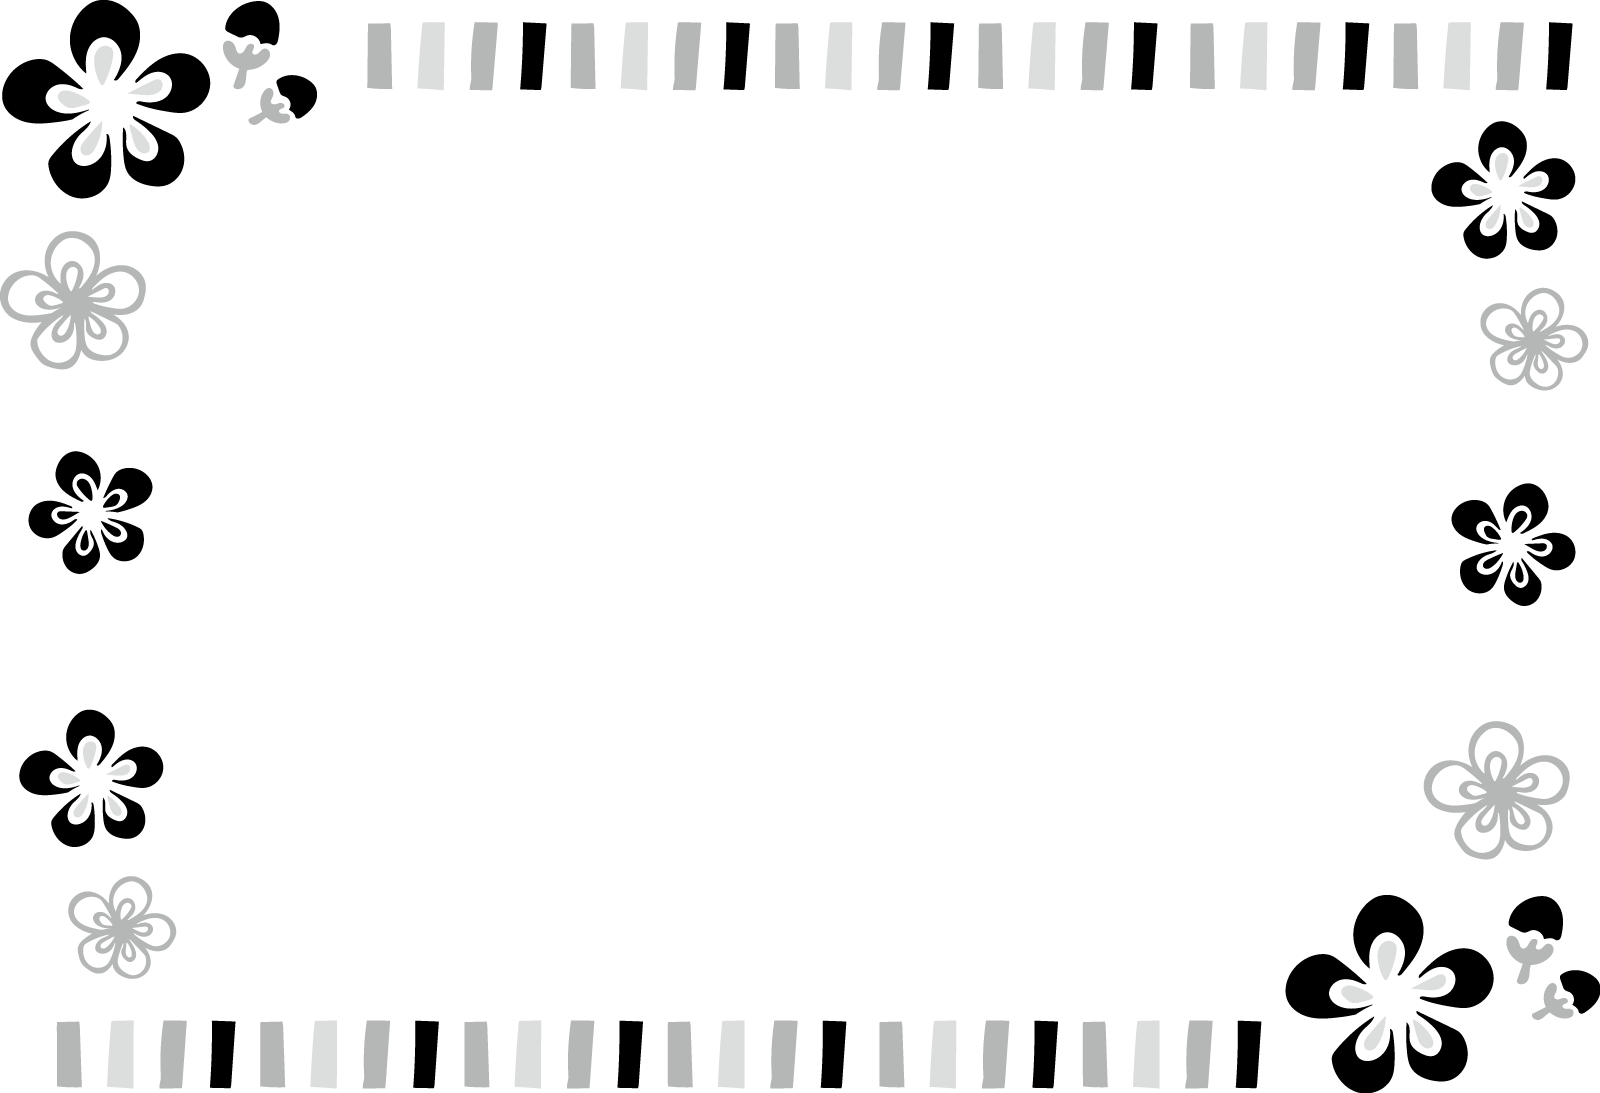 梅のフレーム枠背景イラスト画像素材 白黒 モノクロ